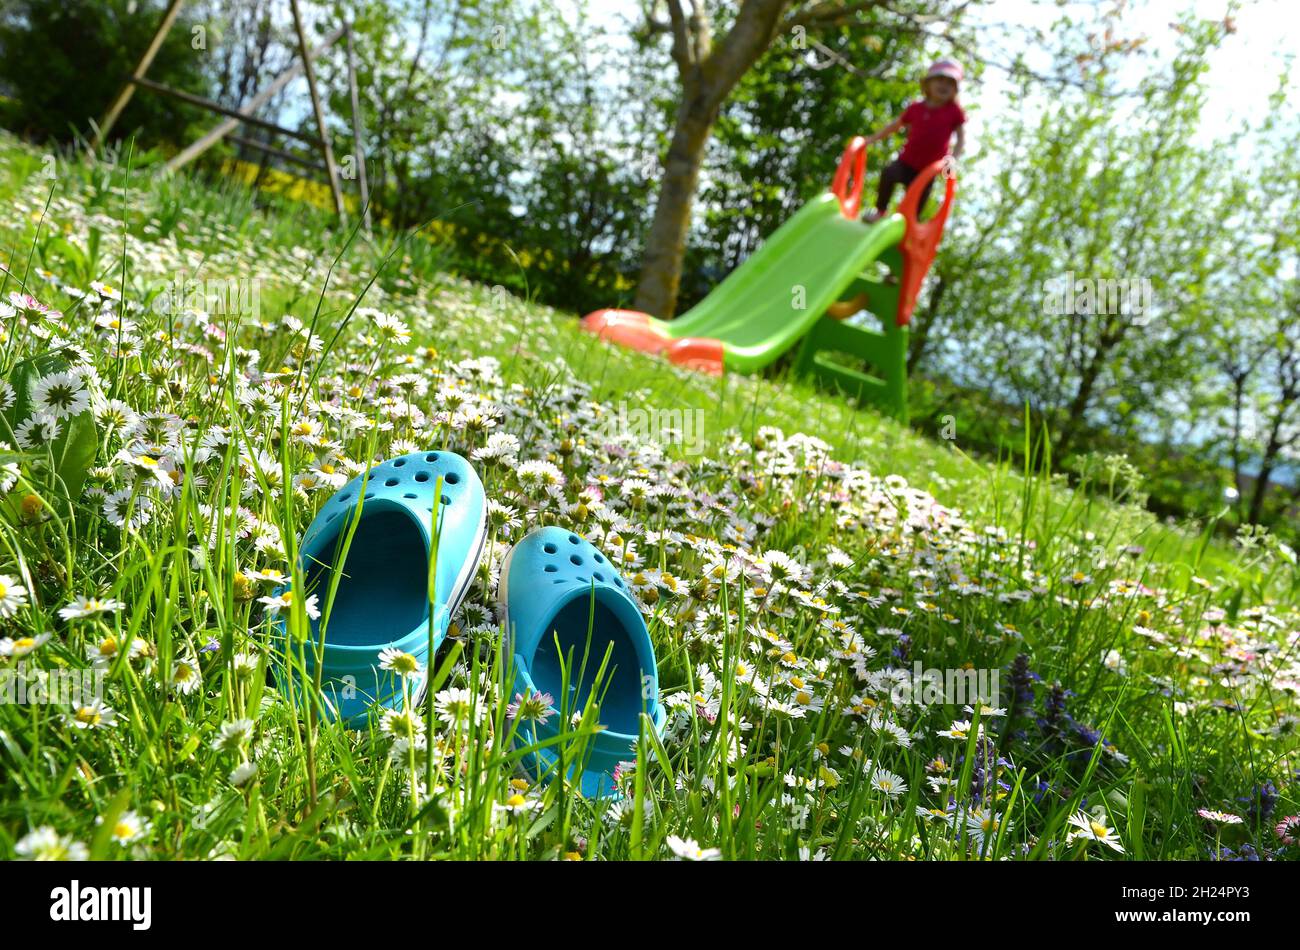 Eine Frühlingswiese mit Gänseblümchen und einer Rutsche lädt zum Spielen ein - un prato primaverile con margherite e bambini la diapositiva ti invita a giocare Foto Stock